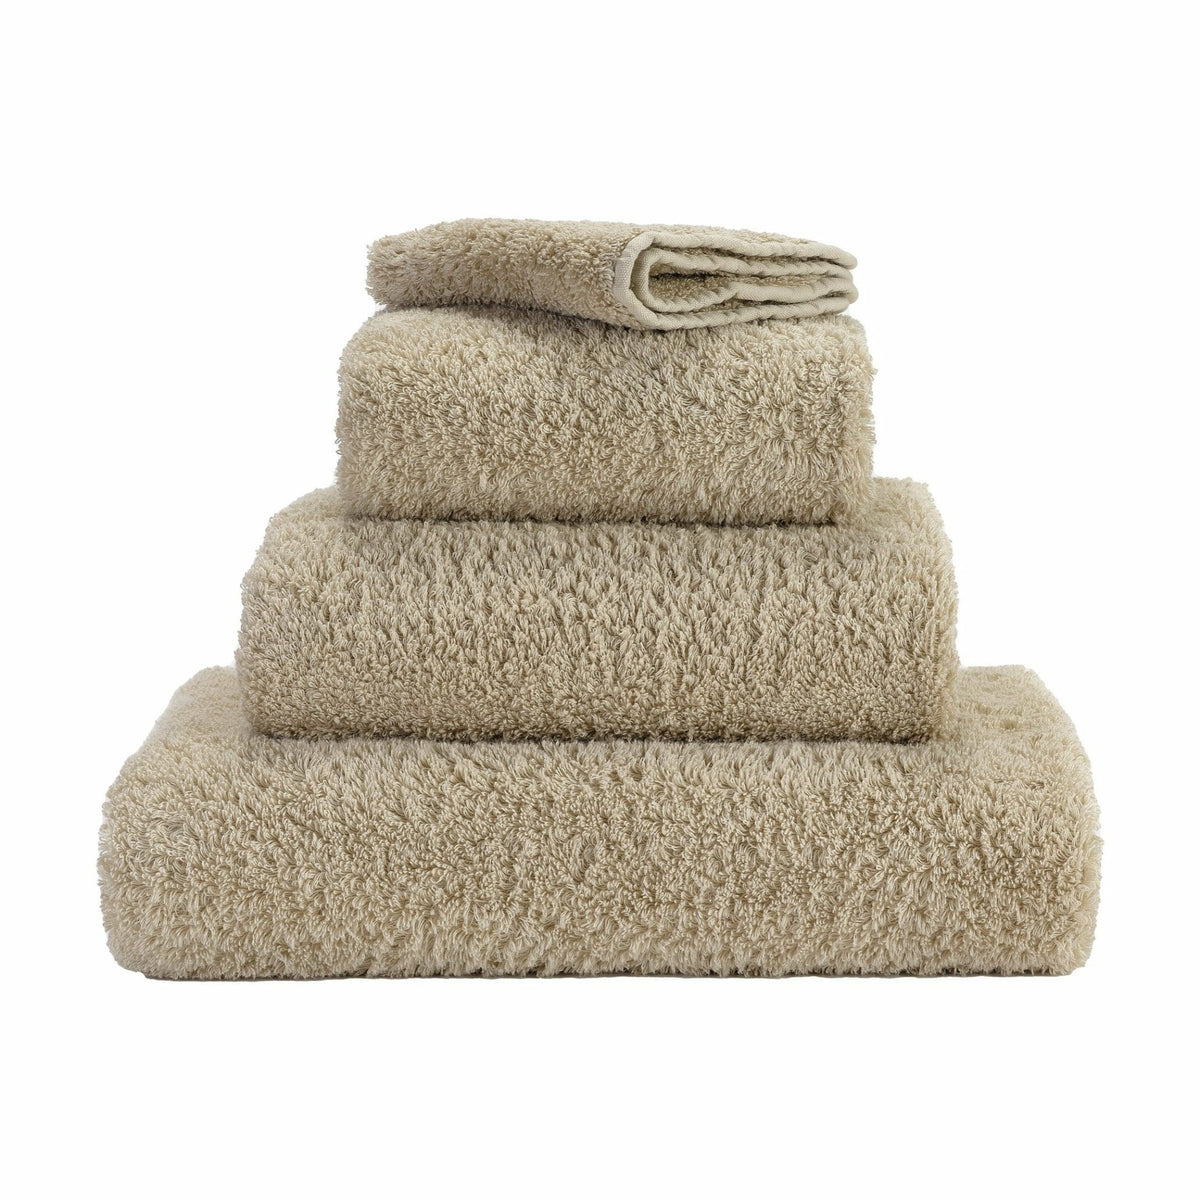 https://flandb.com/cdn/shop/products/Abyss-Super-Pile-Bath-Towels-Linen_1200x.jpg?v=1666343818